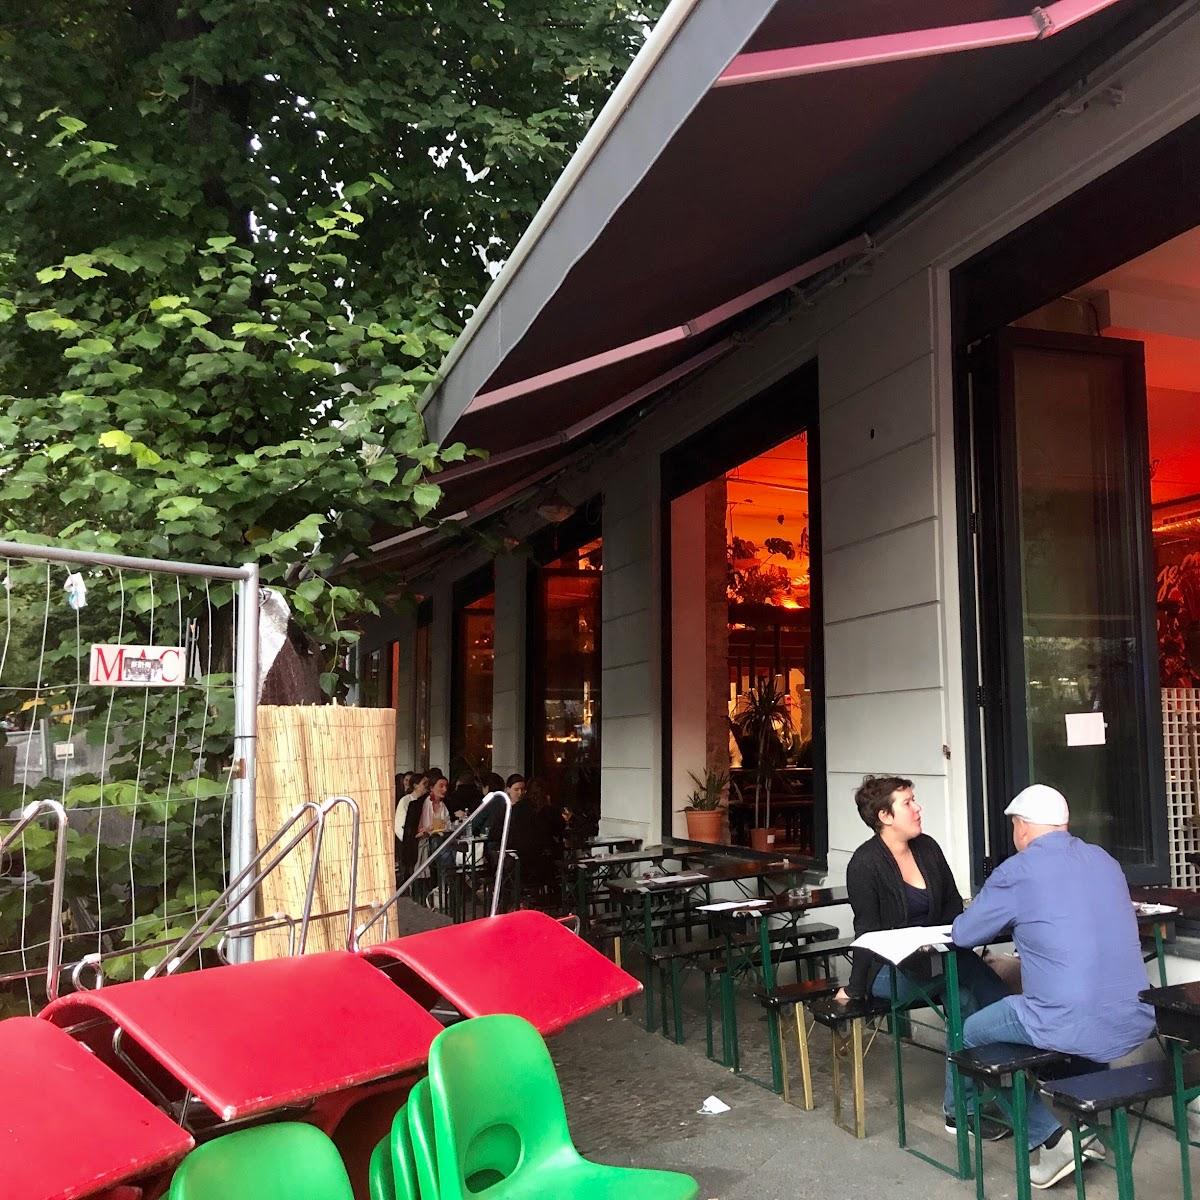 Restaurant "Paolo Pinkel" in Berlin